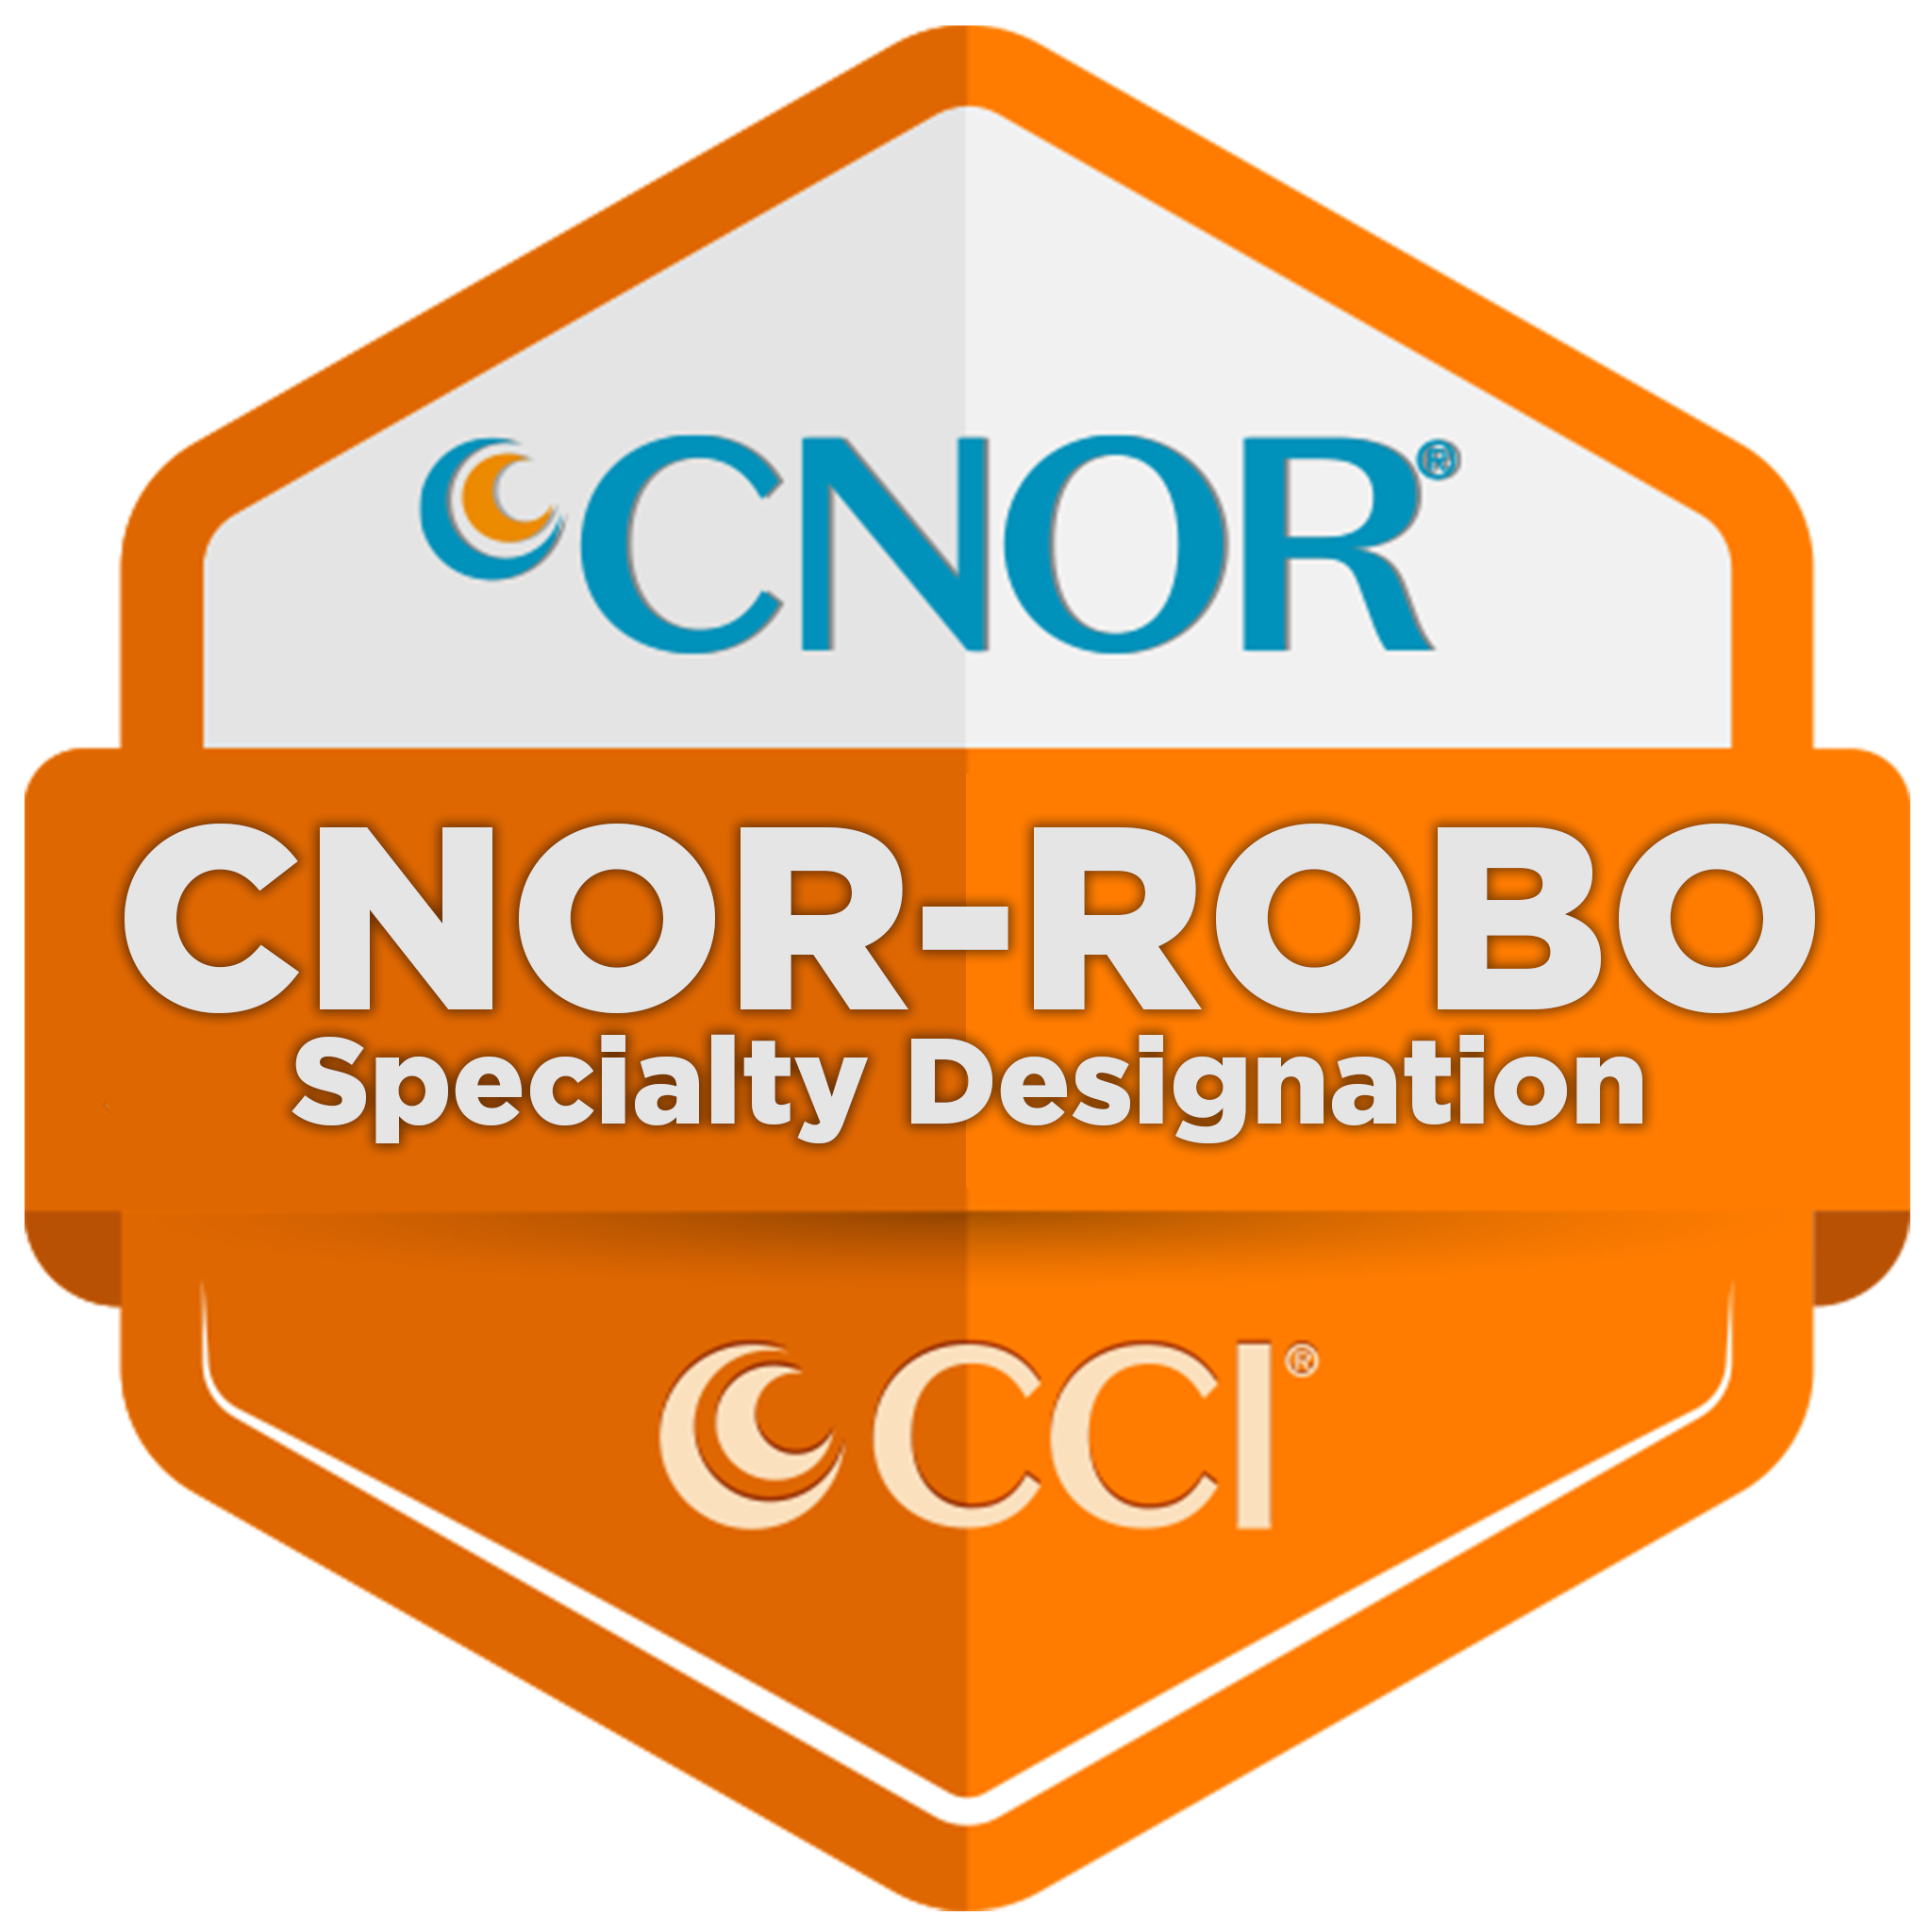 ROBO Designation CNOR